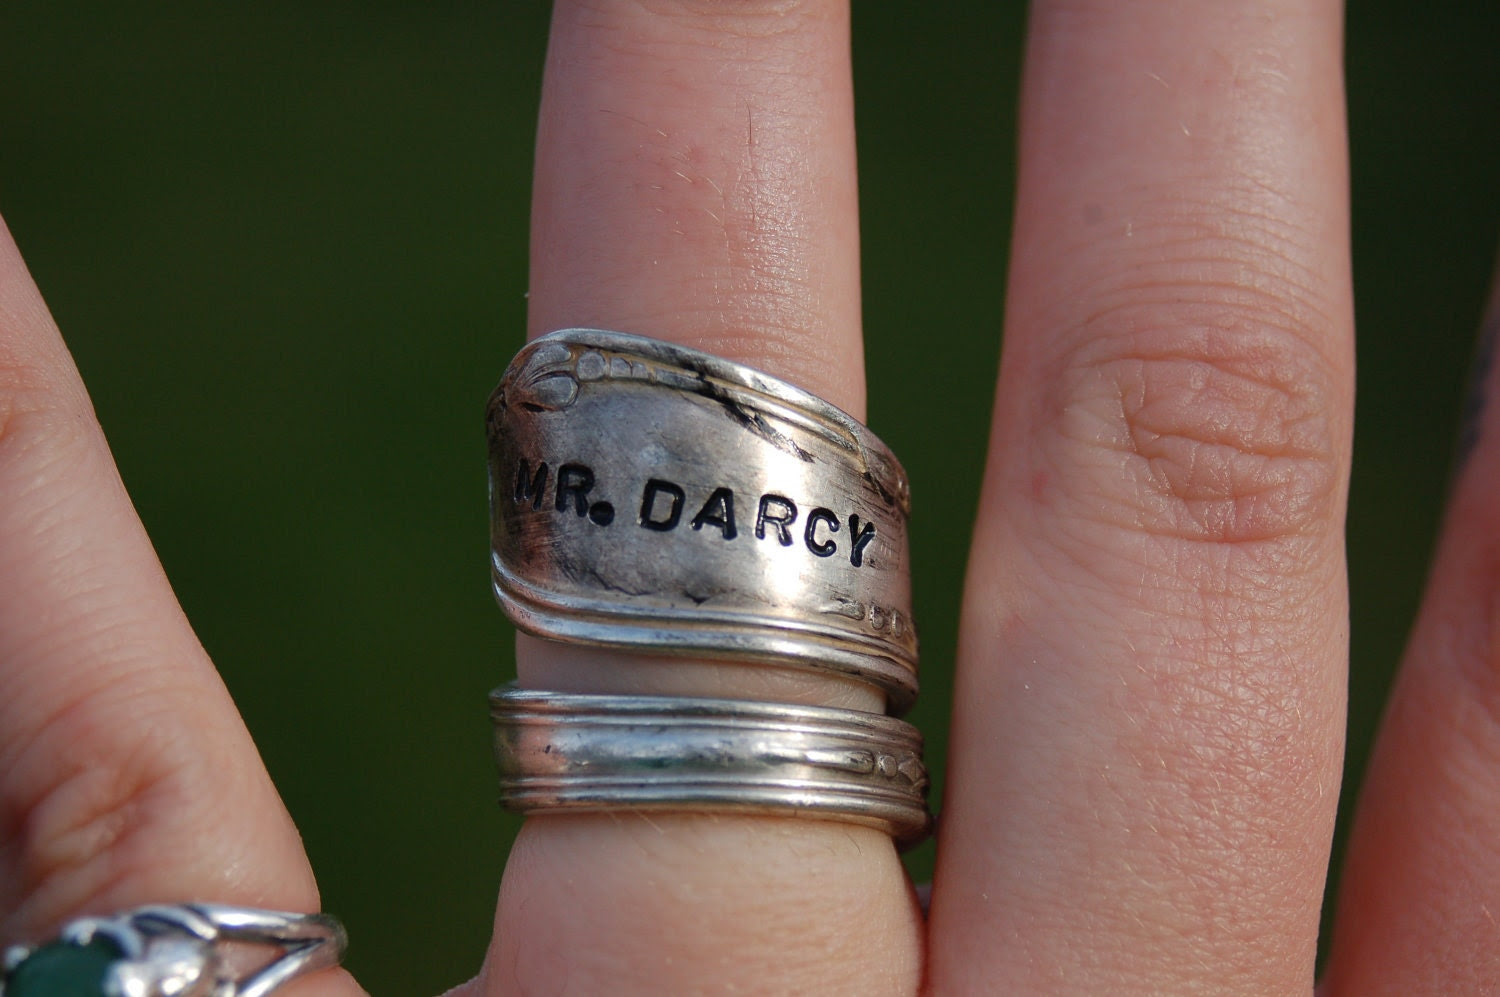 mr. darcy ring